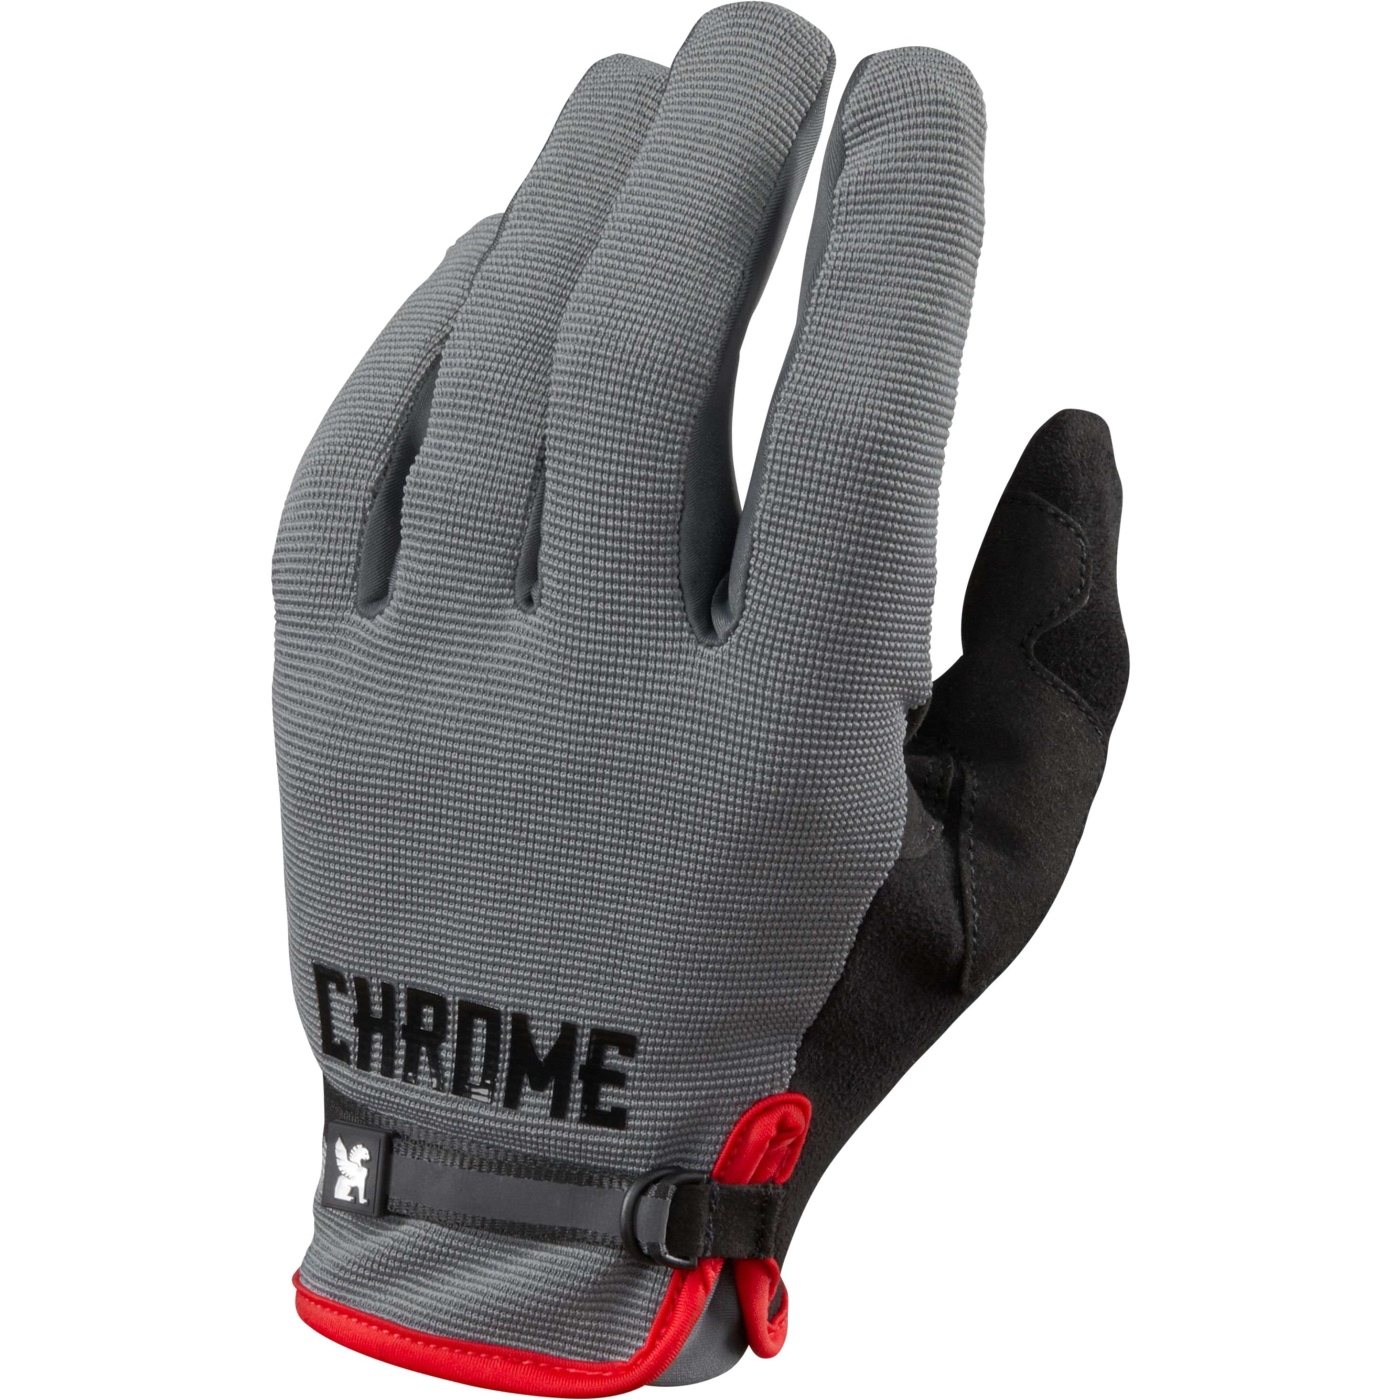 Produktbild von CHROME Cycling Gloves 2.0 Fahrradhandschuhe - Grey/Black